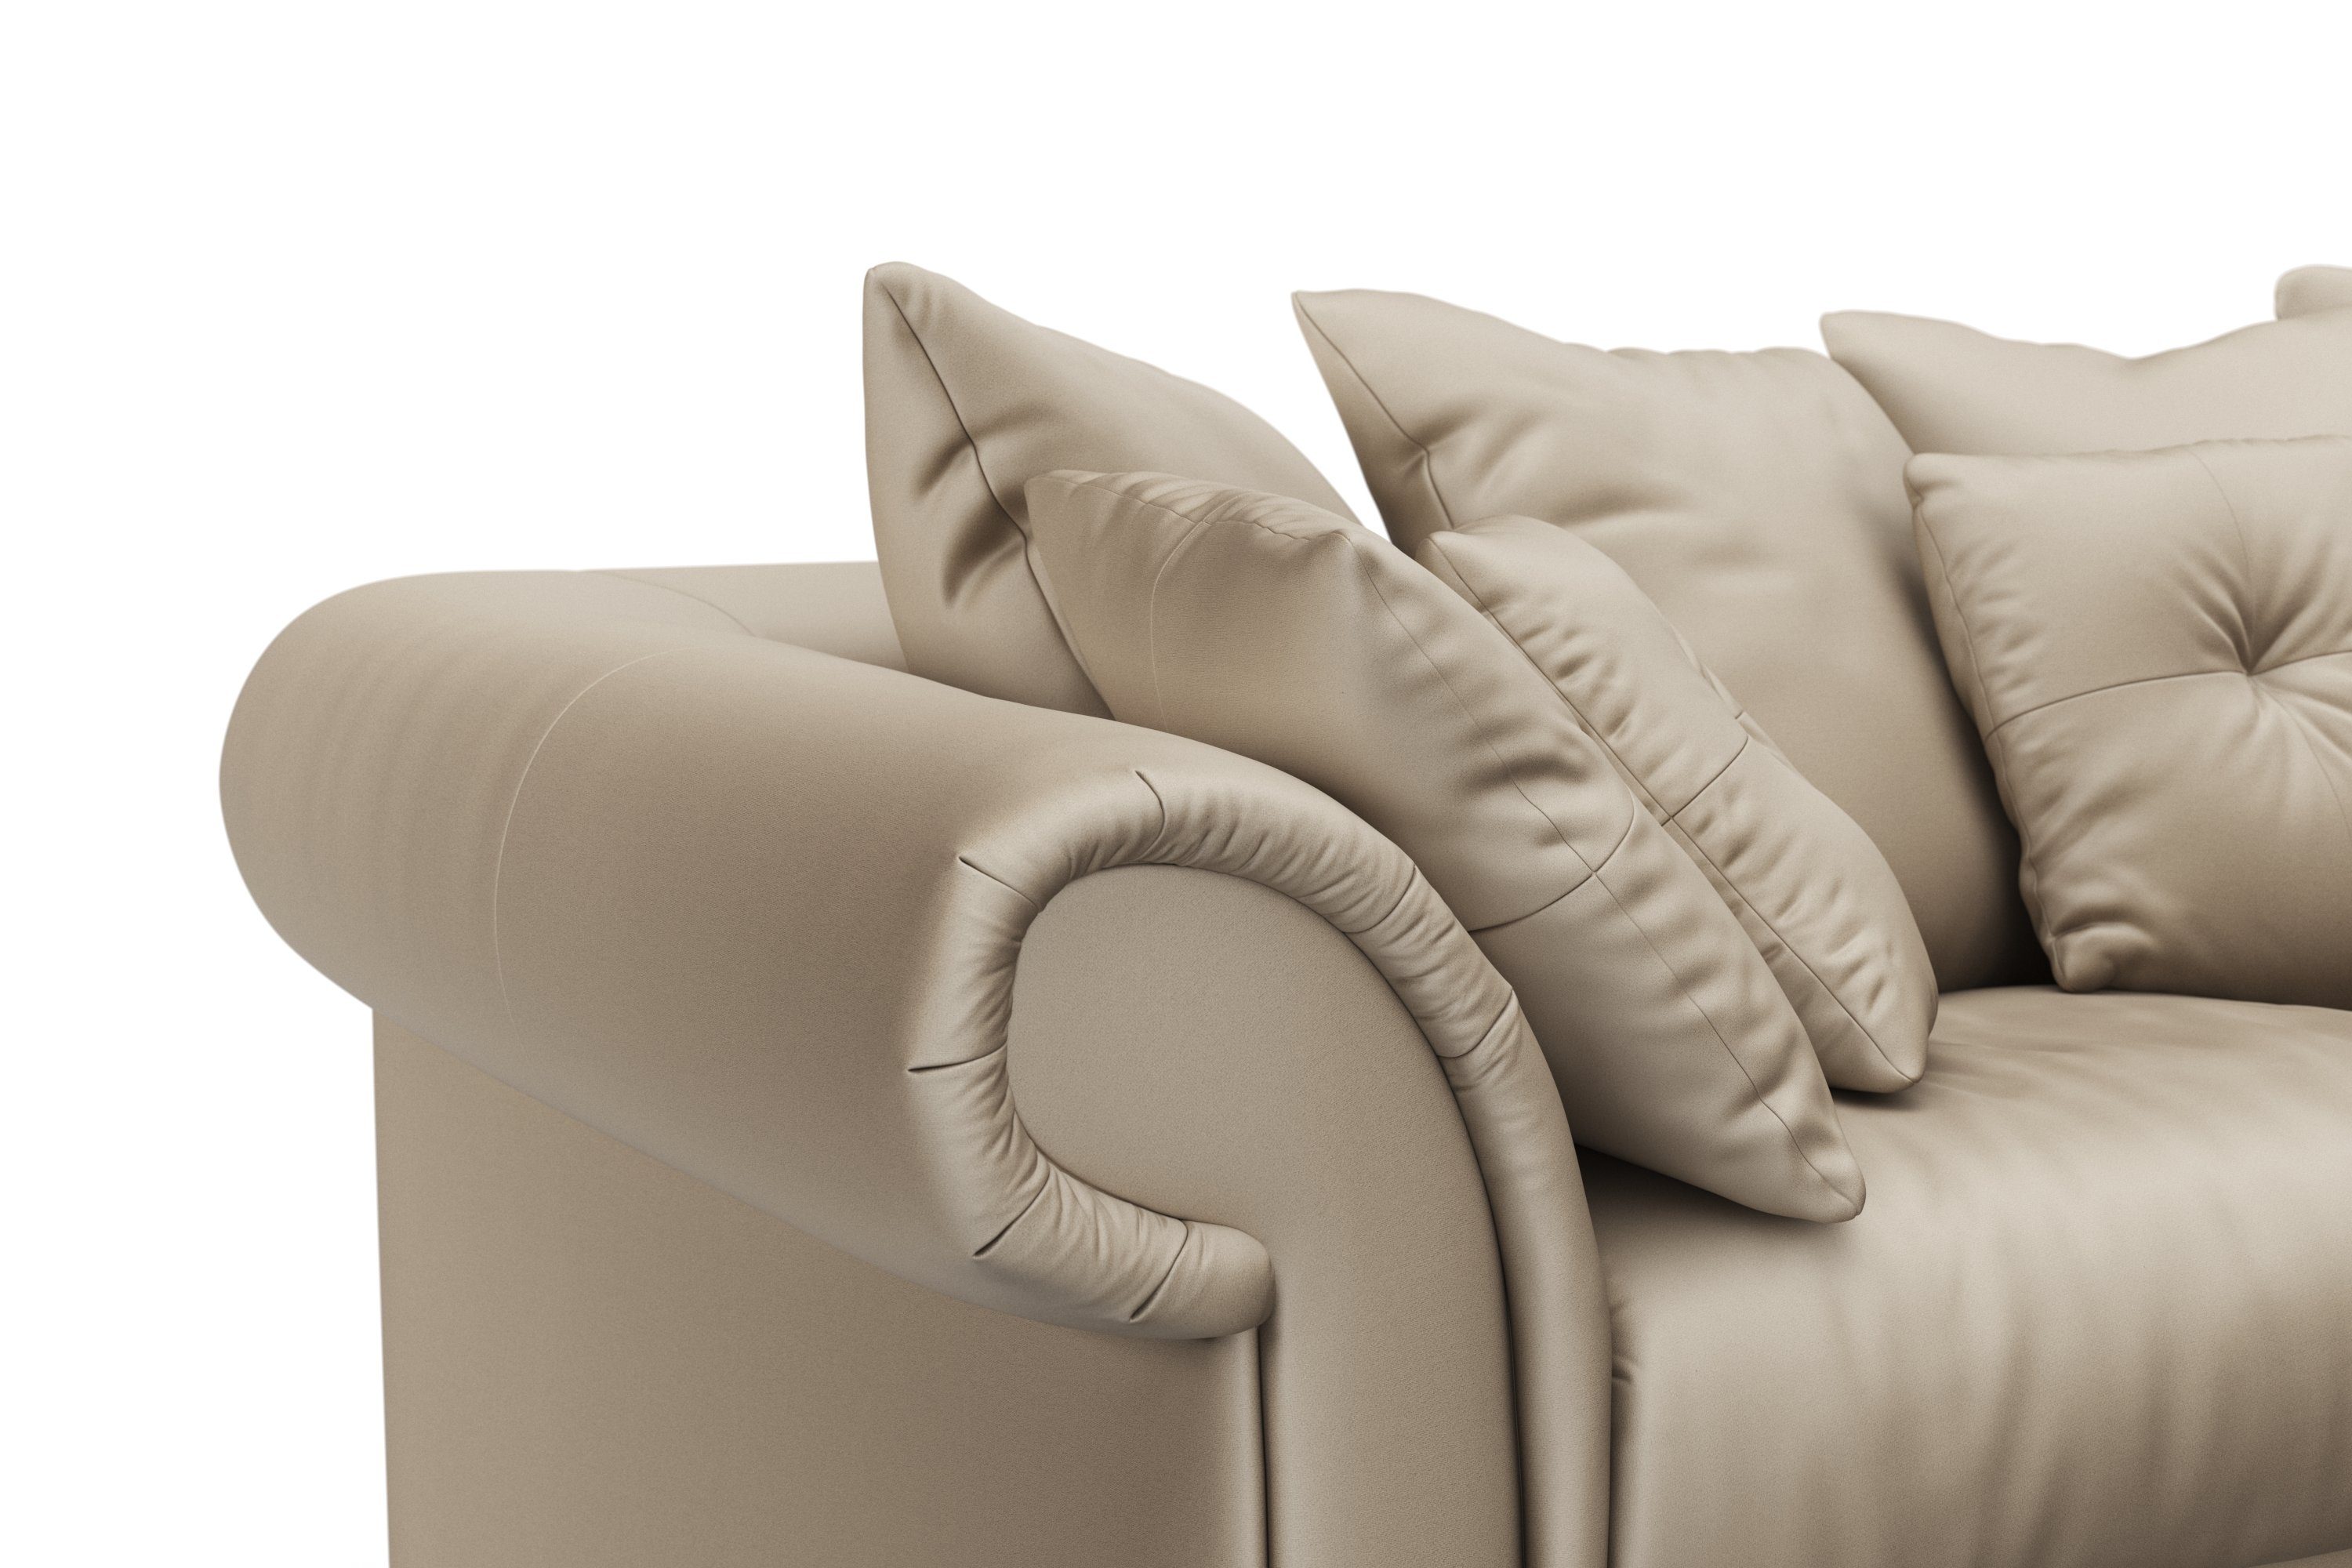 Home affaire Big-Sofa Queenie Kissen 2 zeitlosem Teile, Megasofa, mit weichem viele kuschelige Design, Sitzkomfort und